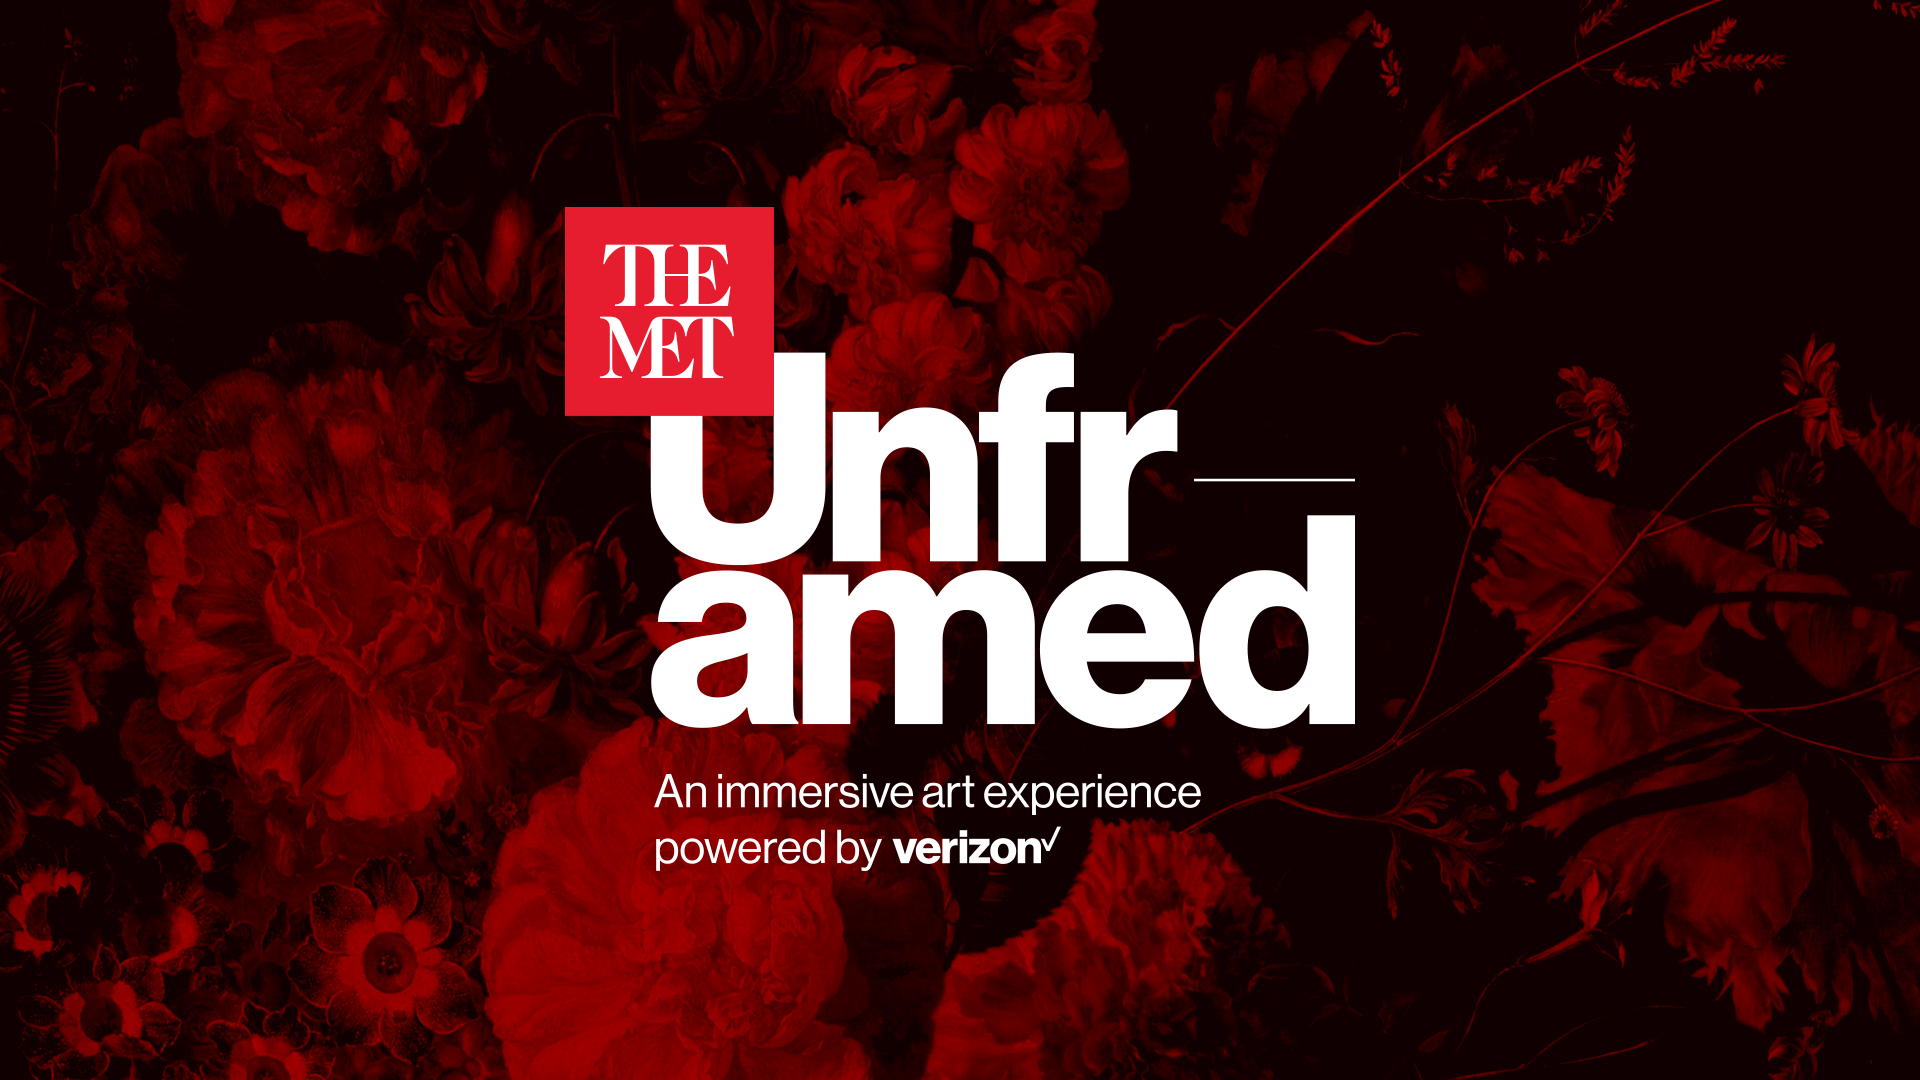 The MET Unframed